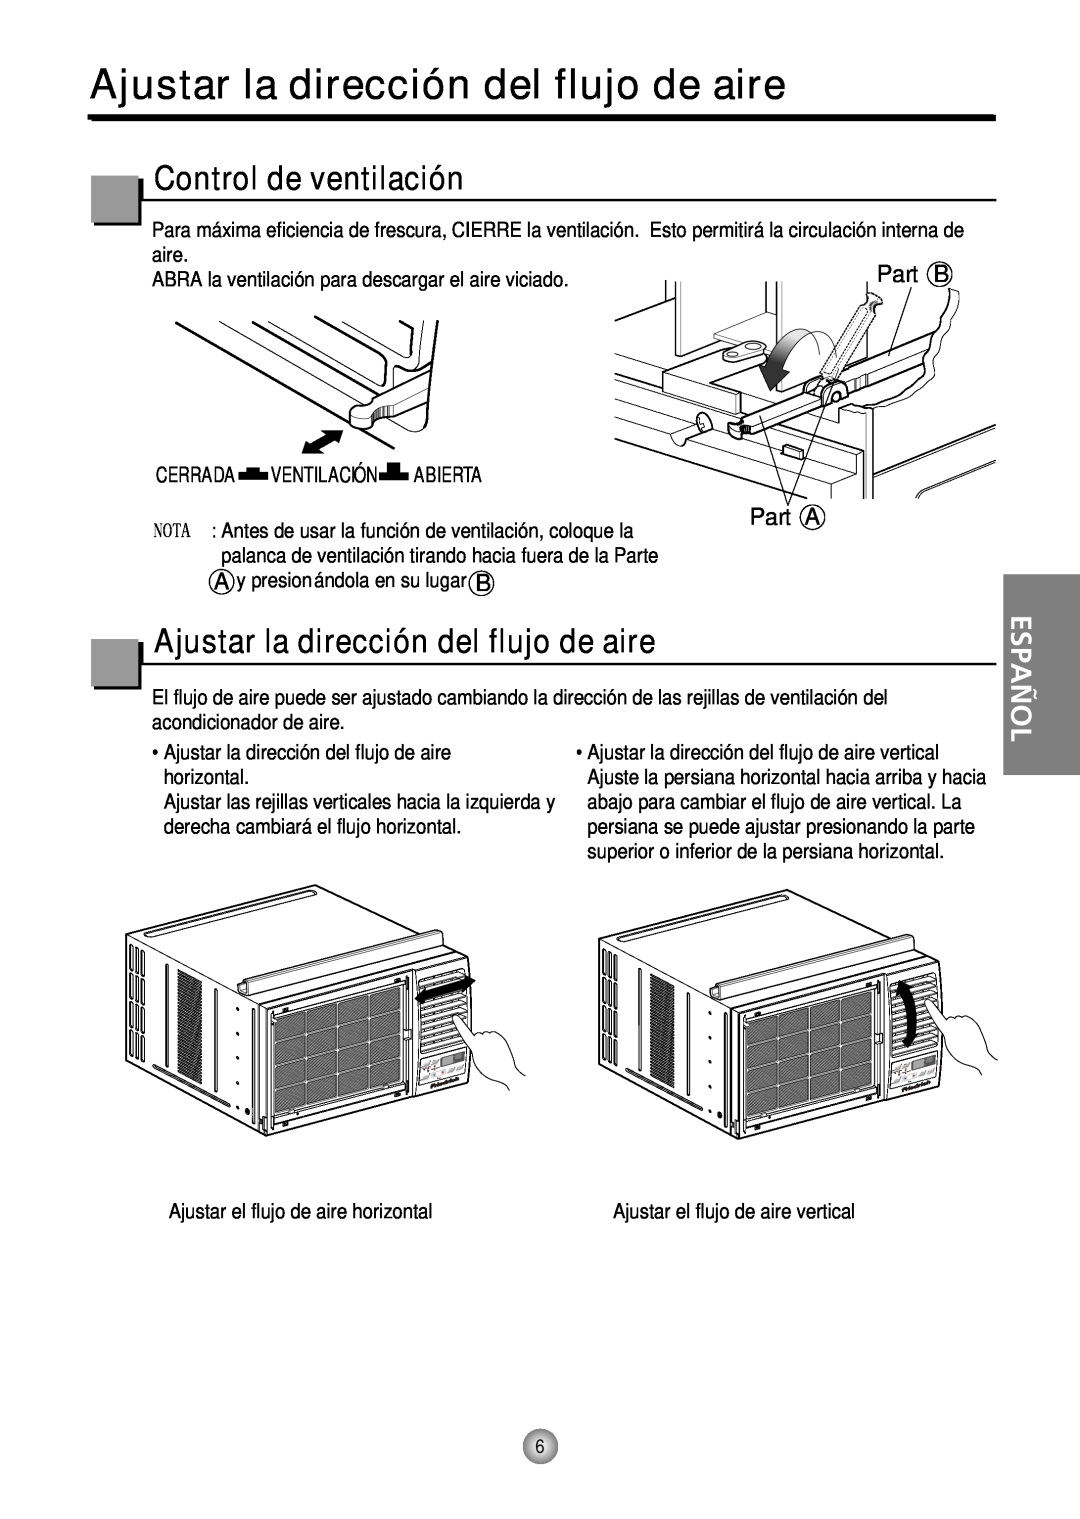 Friedrich CP12, CP10 manual Ajustar la dirección del flujo de aire, Control de ventilación, Español, Part A 